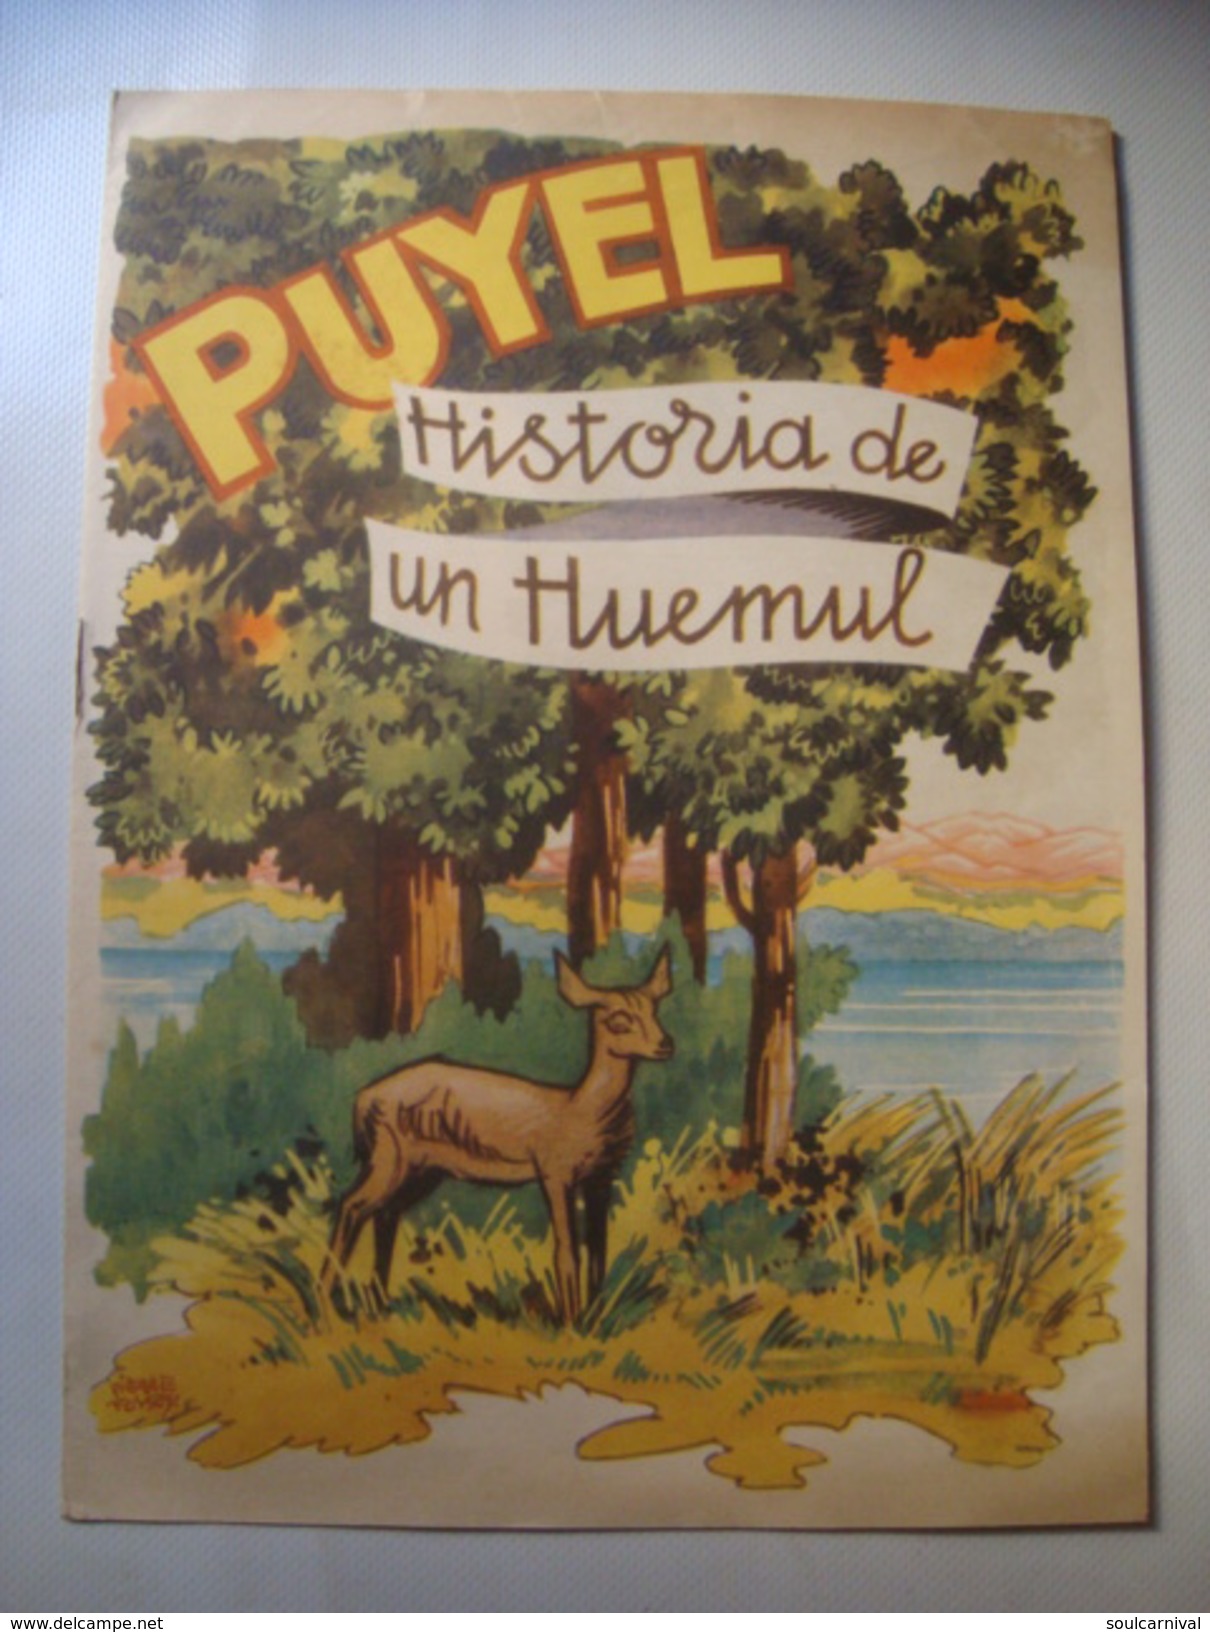 PUYEL. HISTORIA DE UN HUEMUL - ARGENTINA, DIRECCION DE TURISMO Y PARQUES, 1950 APROX. BY PIERRE FOSSEY. - Libros Infantiles Y Juveniles